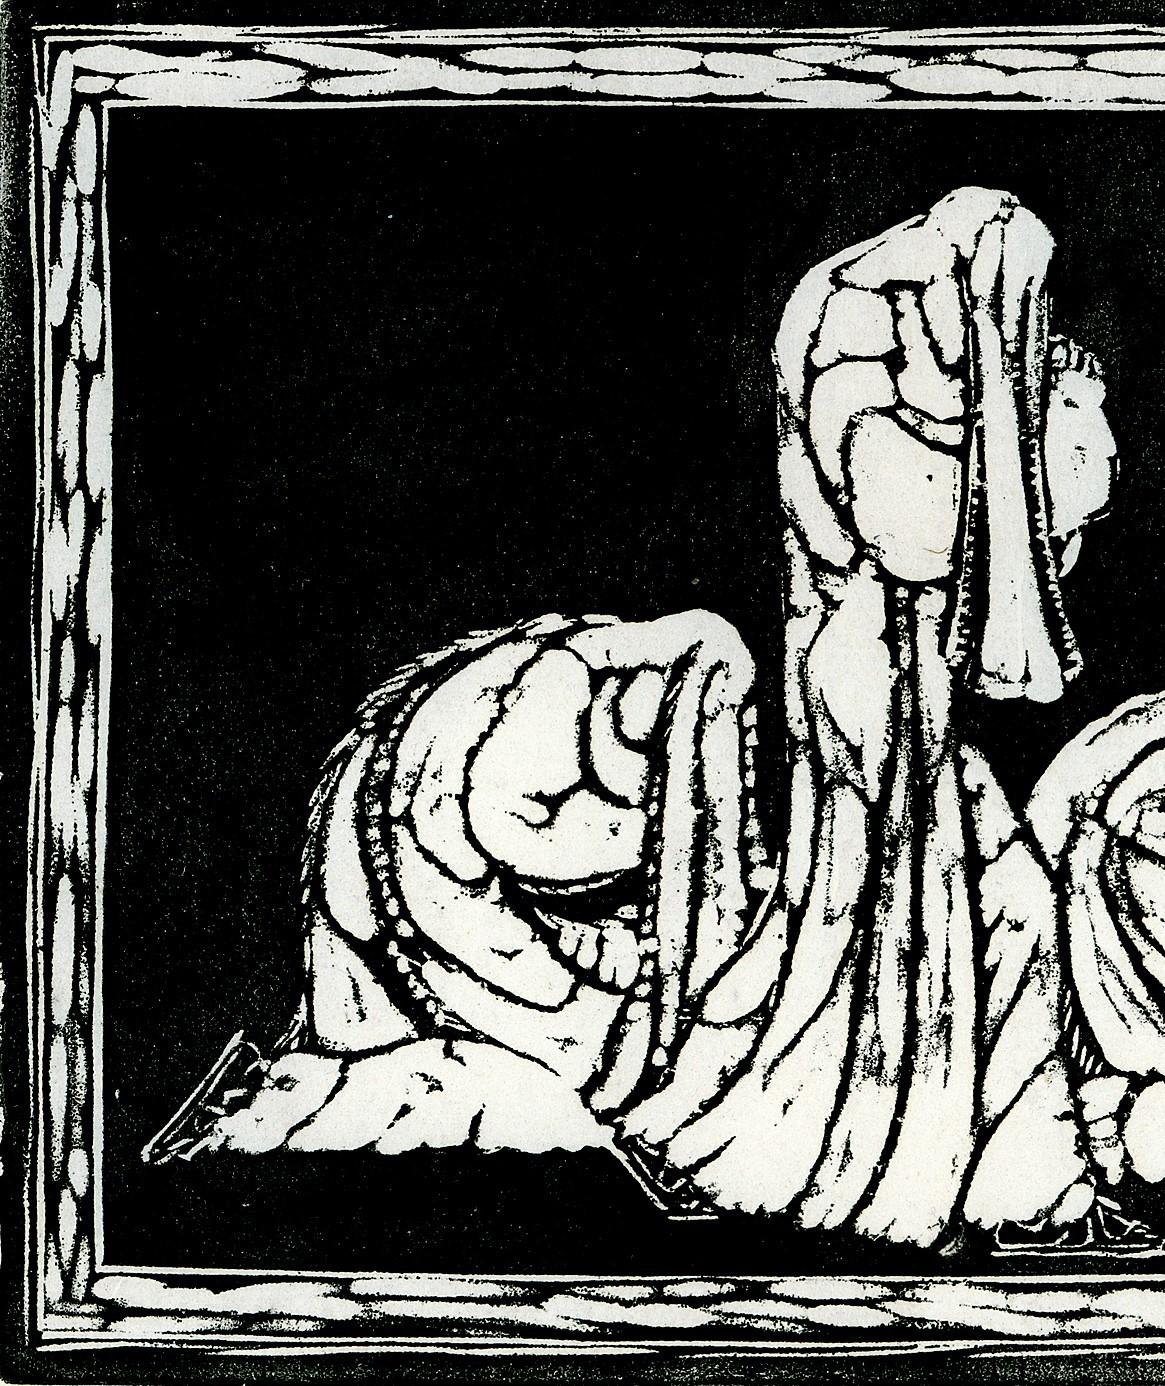 Trauernde. (Mourning) - Expressionist Print by Heinrich Ehmsen